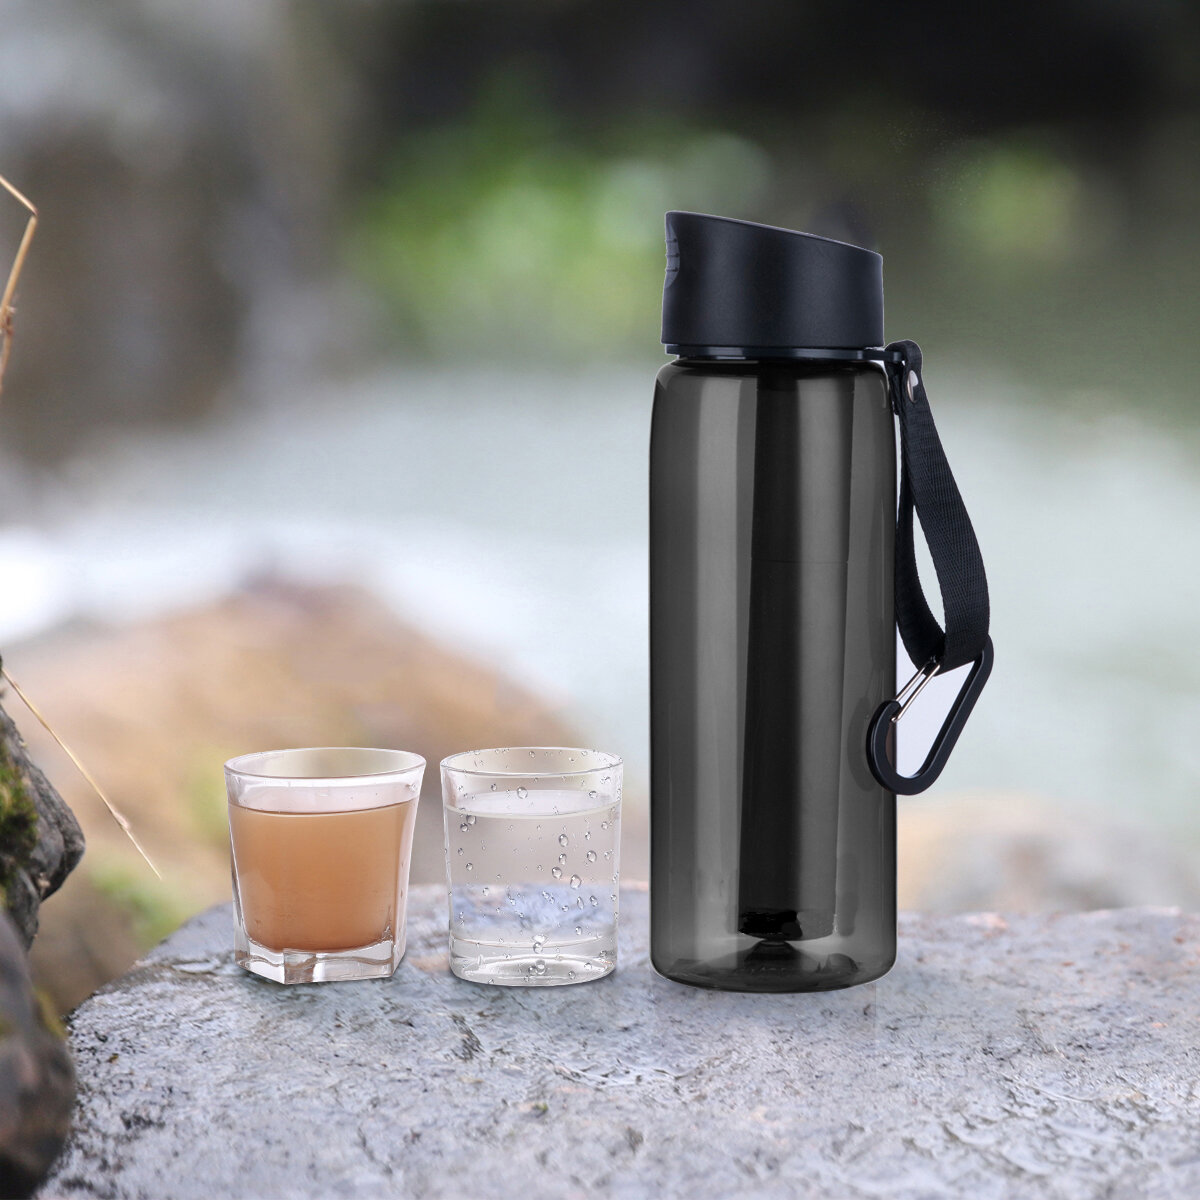 IPRee® Water Purifier Bottle 2-traps Water Purifier Cup Emergency Filter Straw voor wandelen, backpacken, reizen, kamperen en survival tools